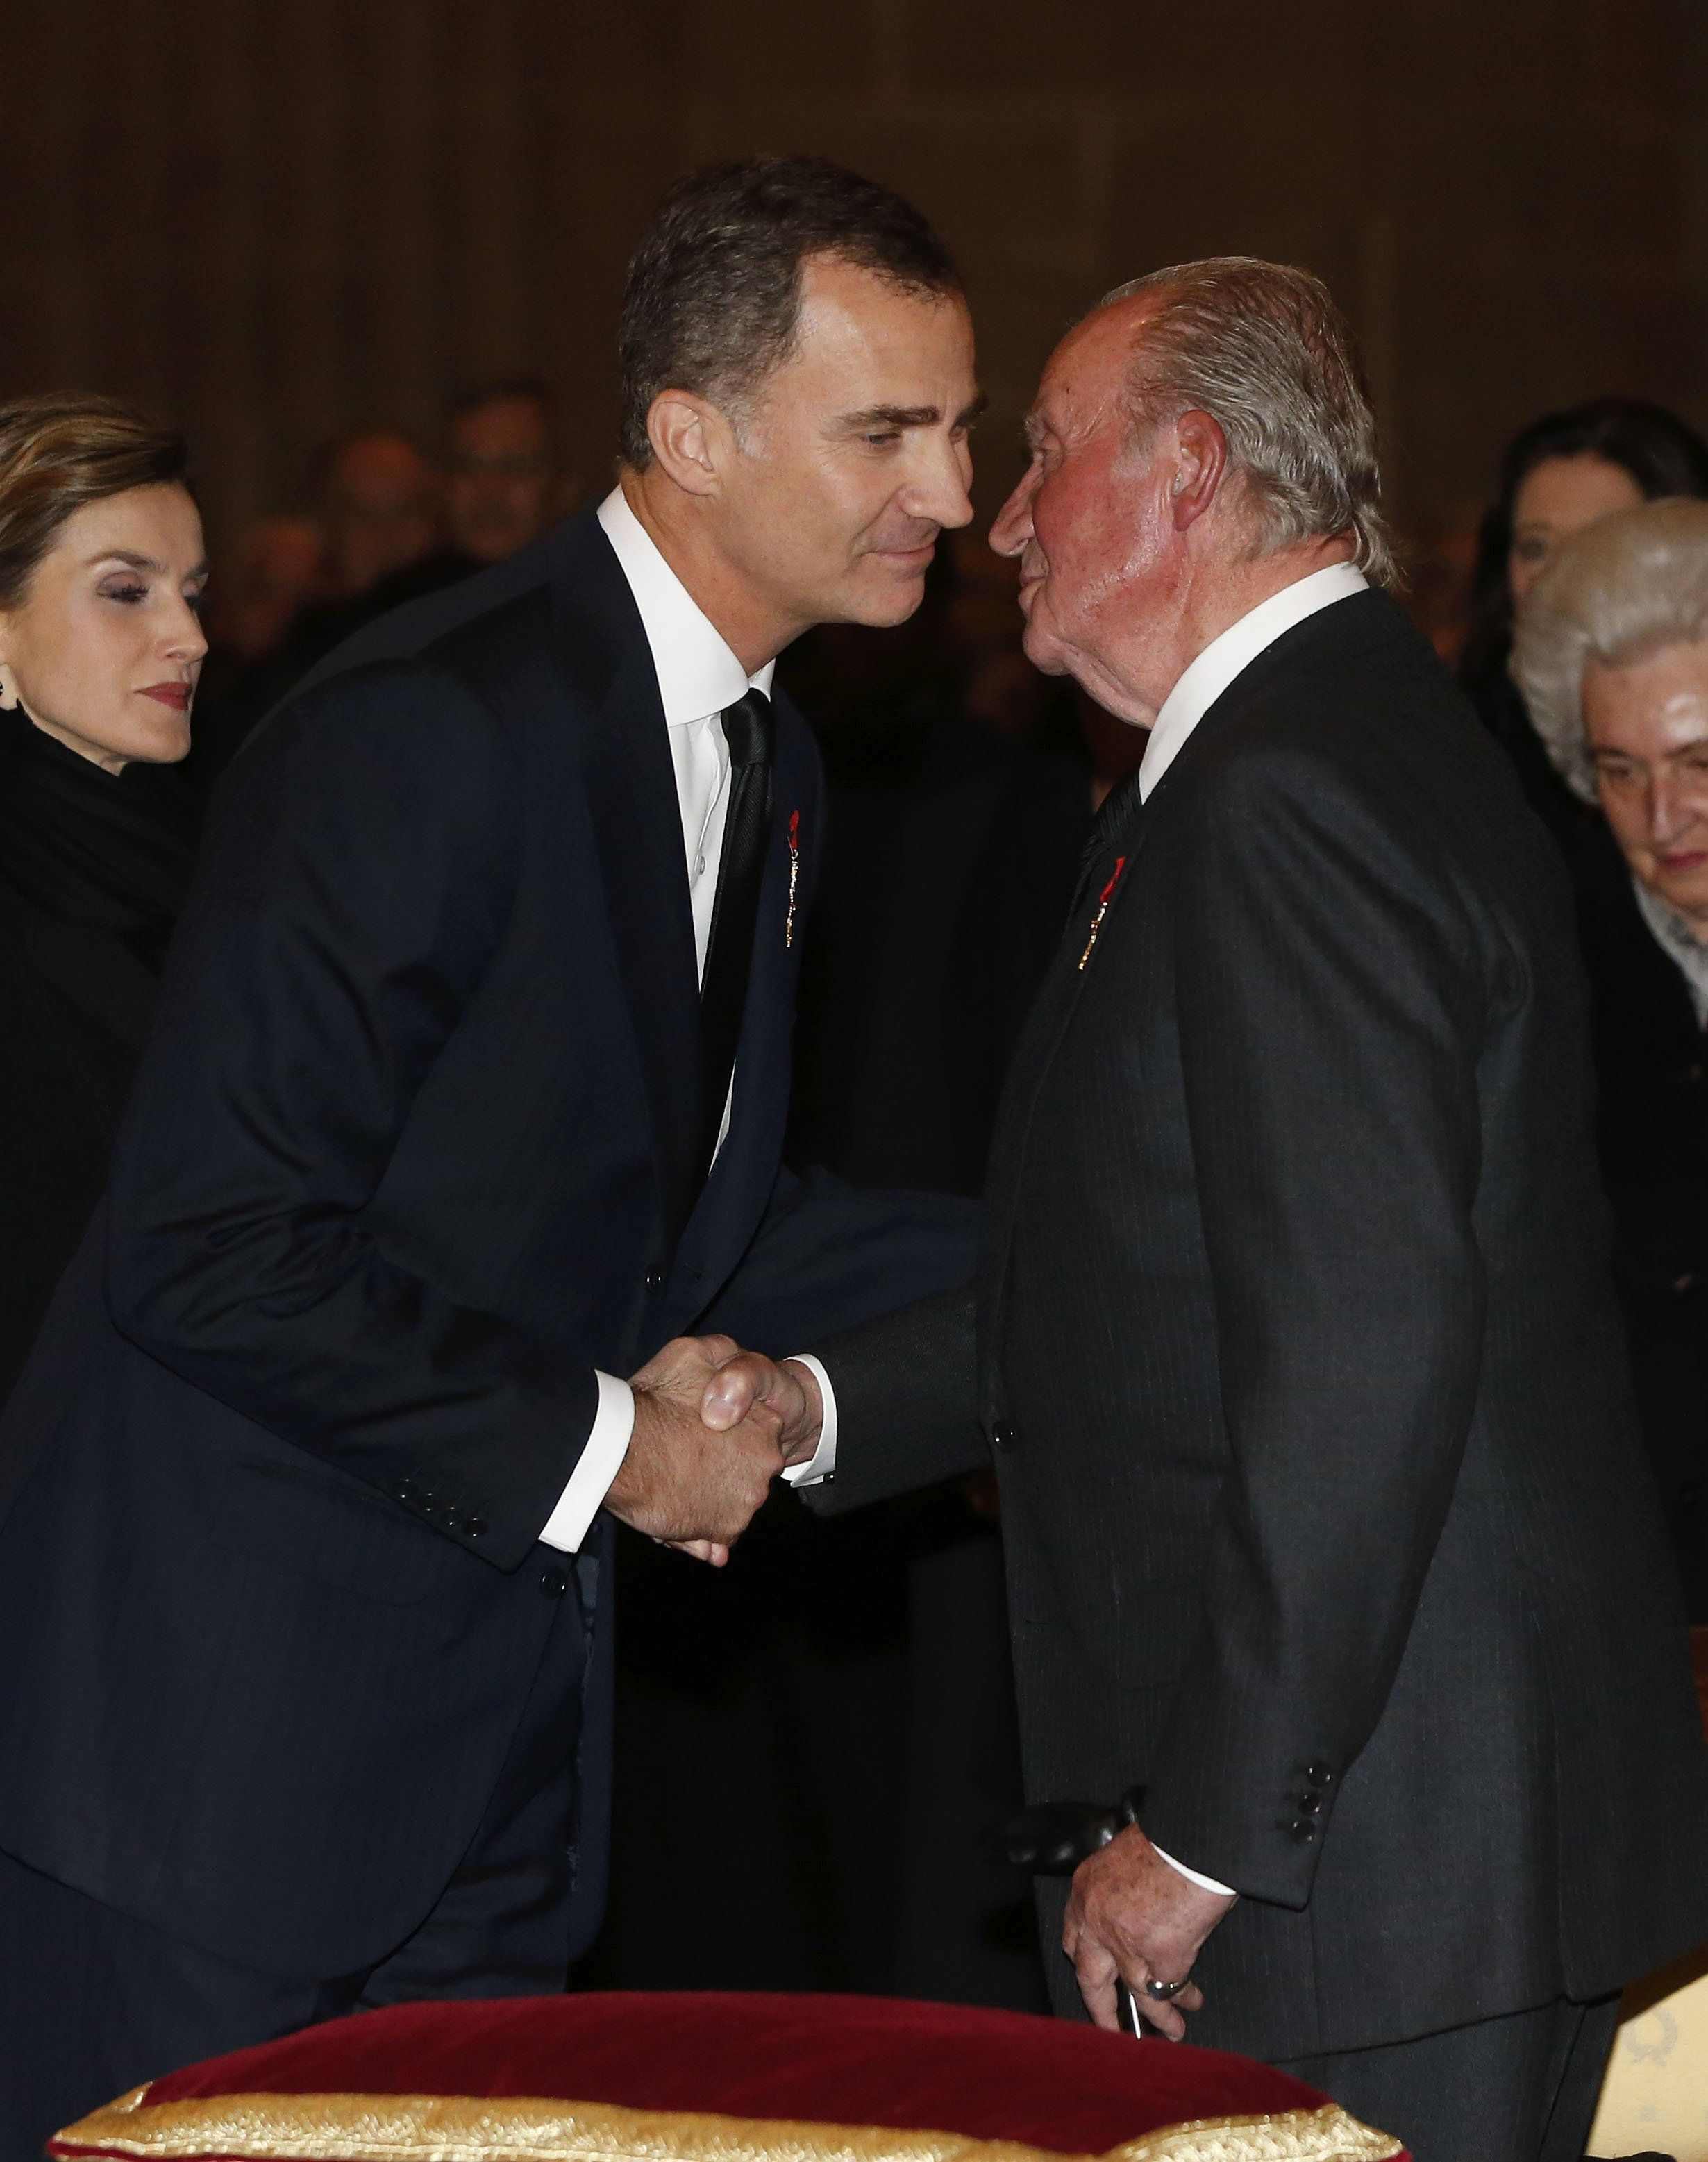 Turno de Felipe VI: ¿Cómo castigará a Juan Carlos?